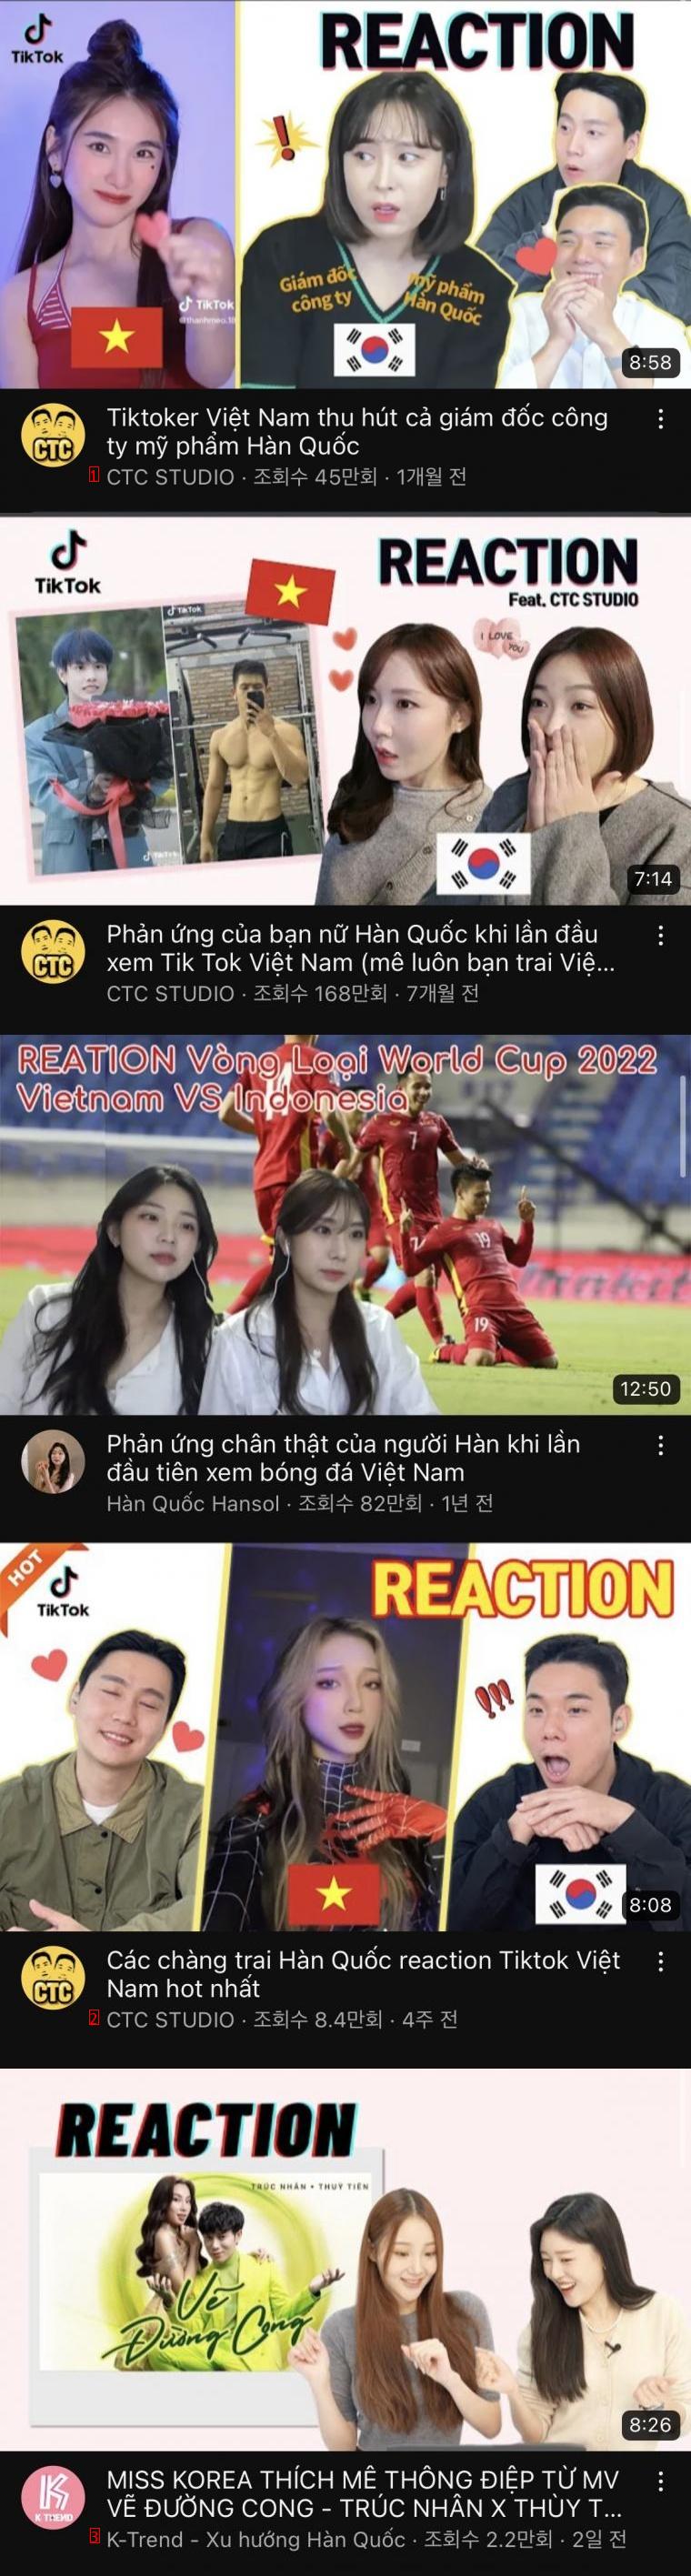 最近ベトナムで流行っているというクッポンコンテンツ。